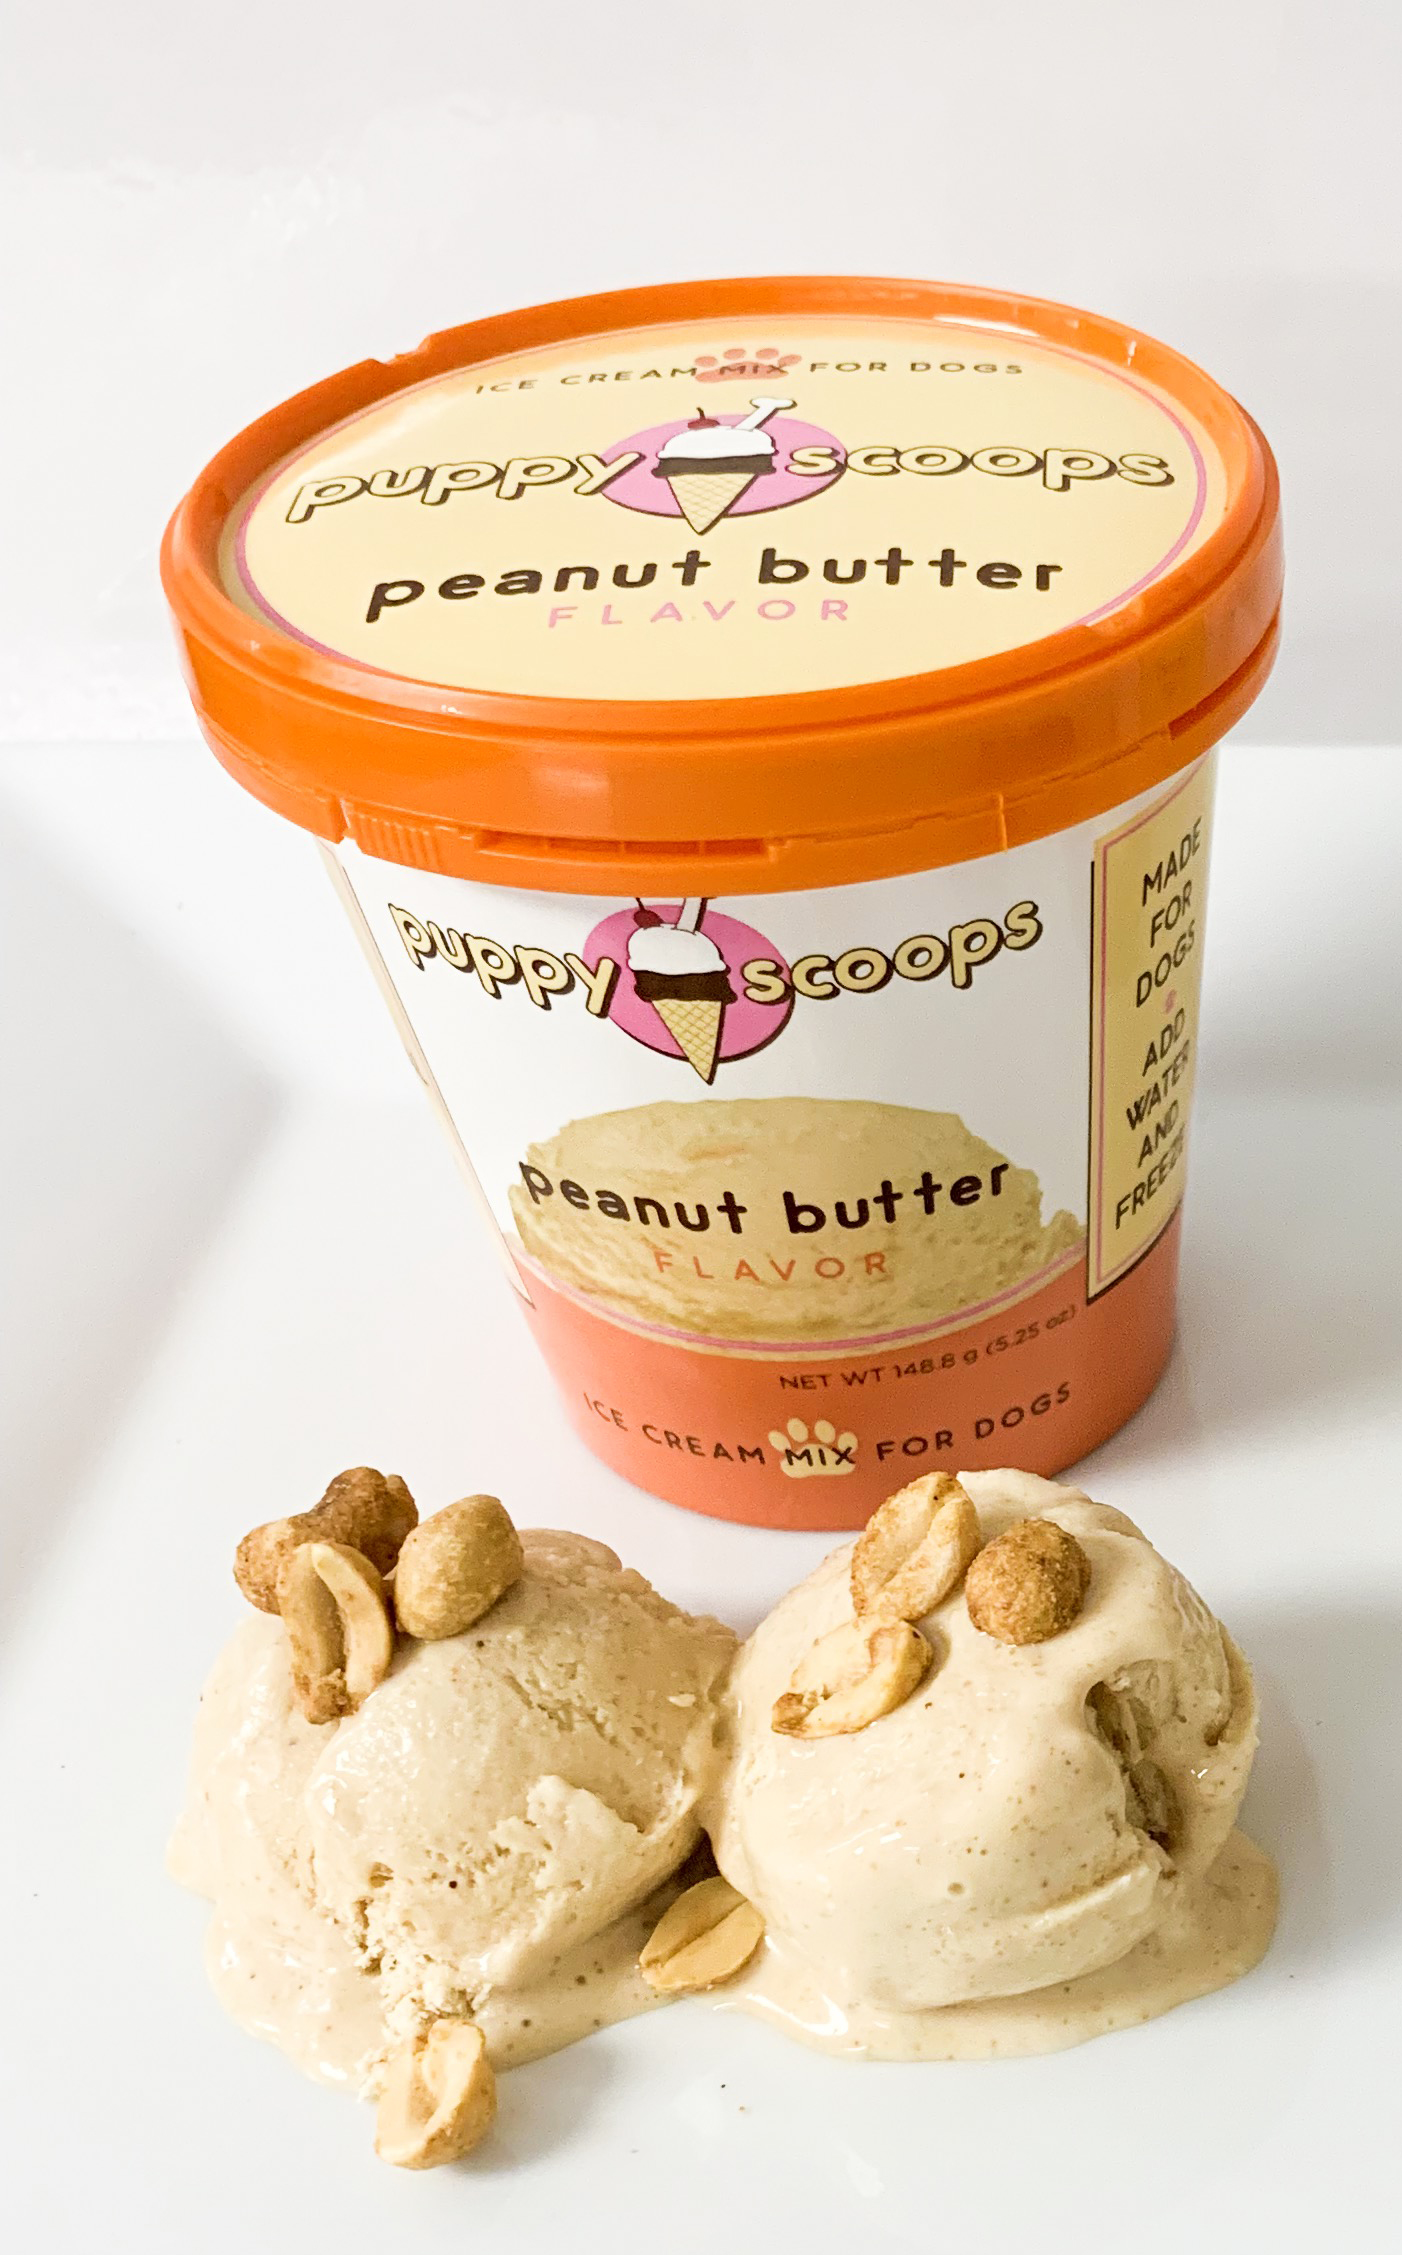 Hoggin' Dogs Ice Cream Mix - Peanut, Cup Size, 2.32 oz